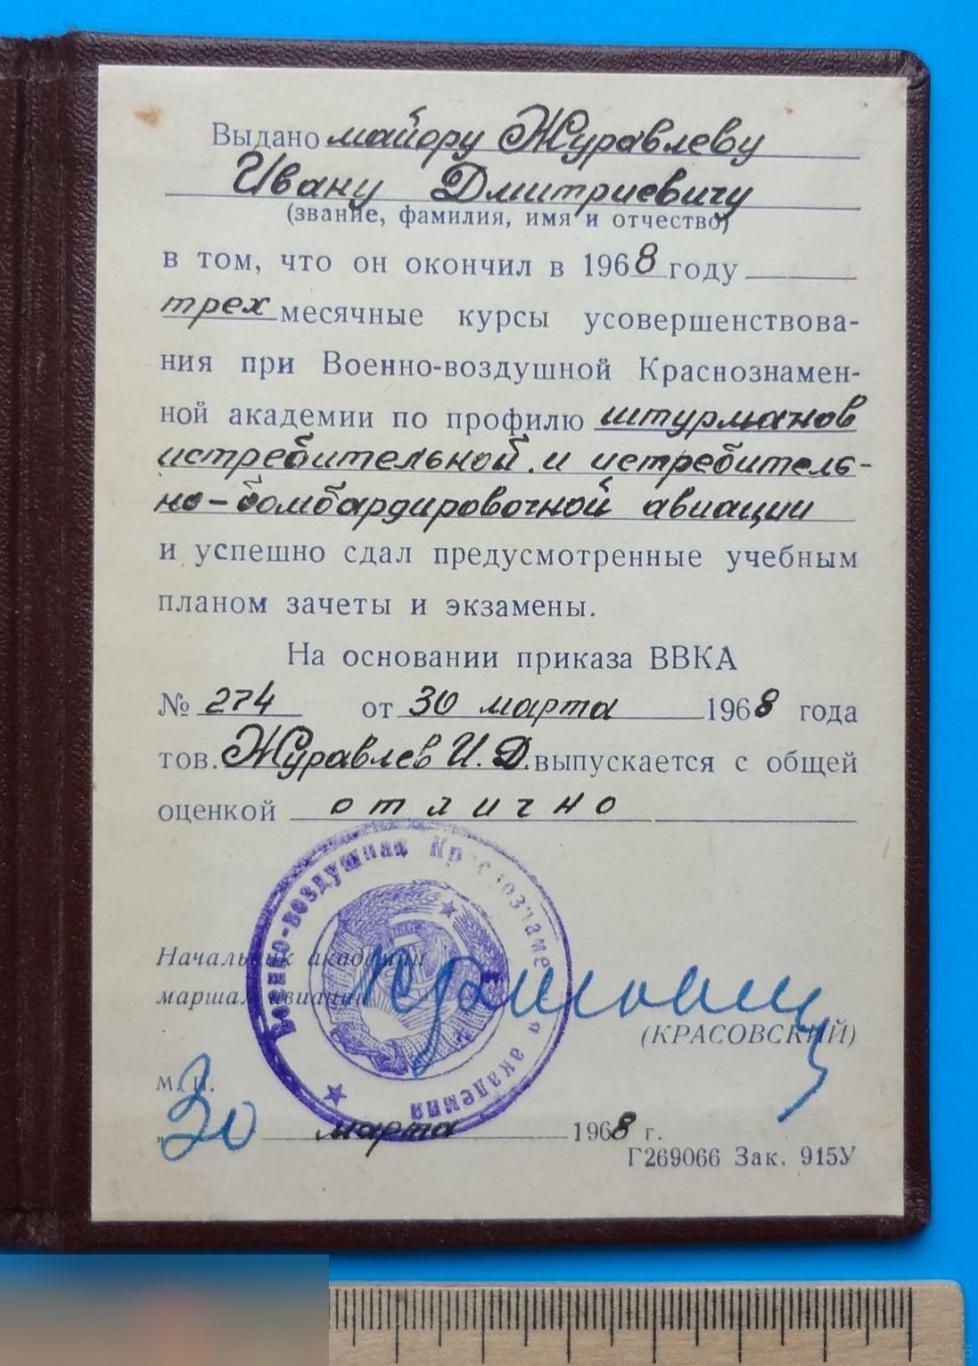 Удостоверение курсы Военно-воздушная Краснознаменная академия 1968 подпись Маршал авиации Красовский 2